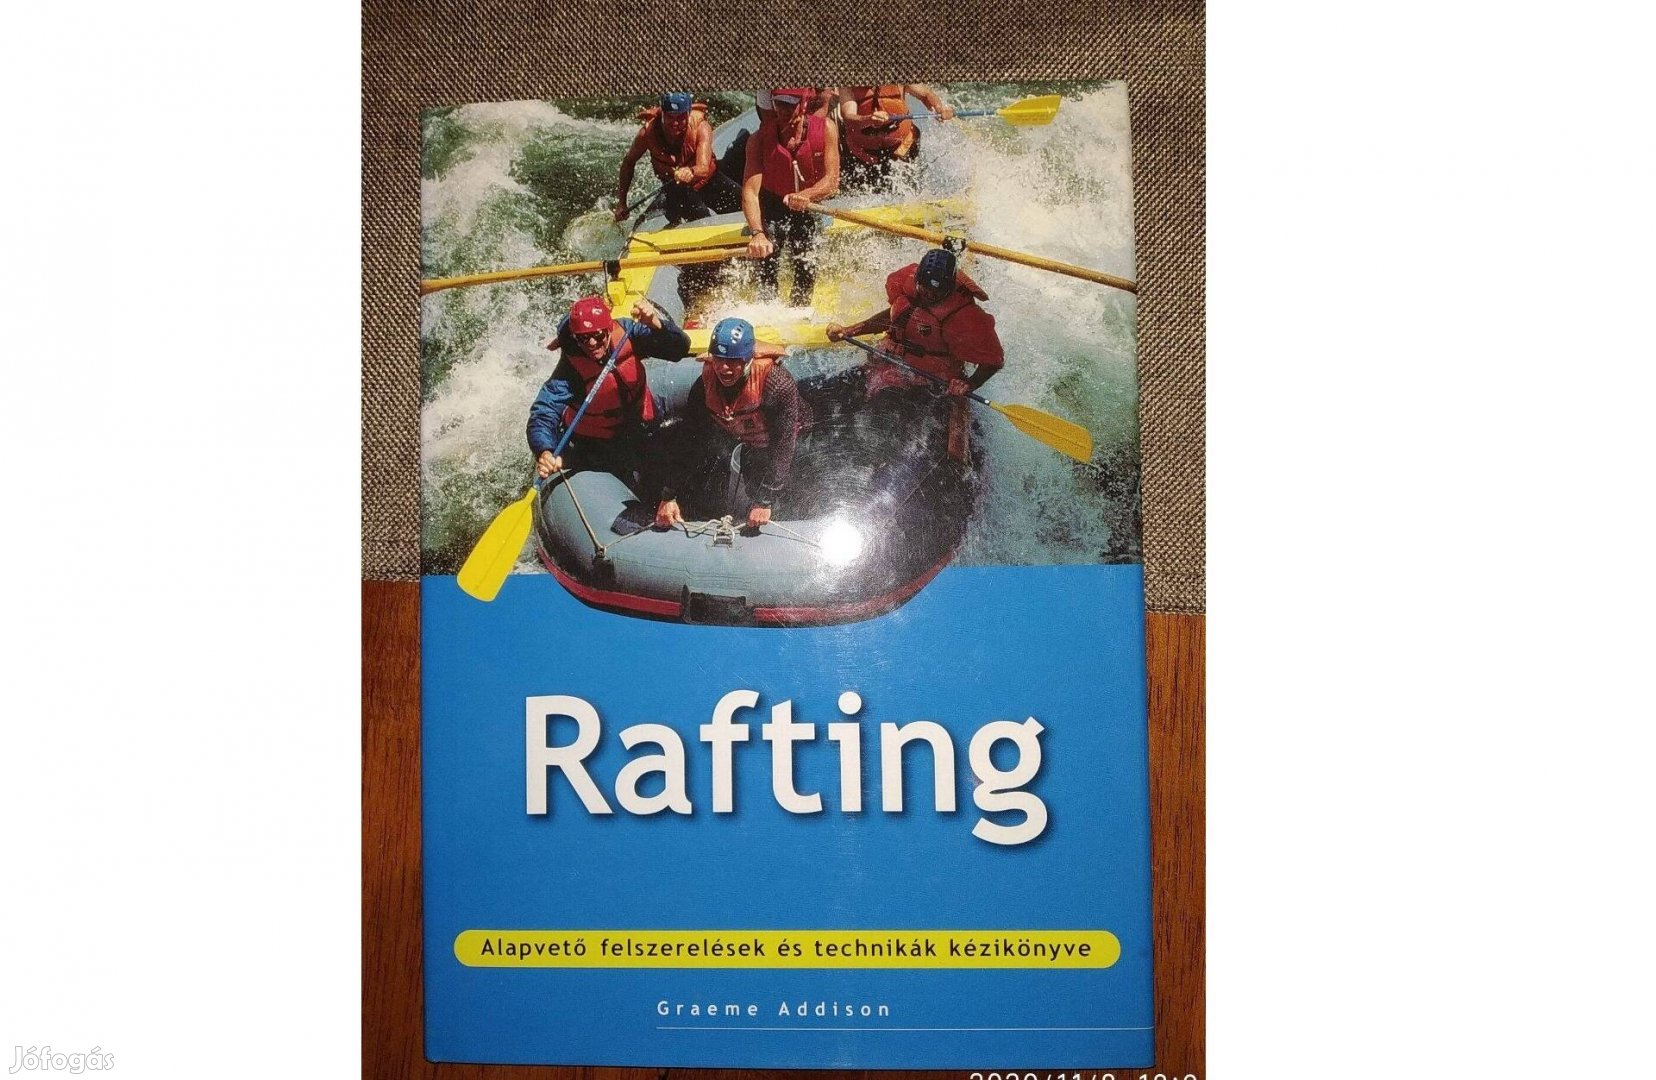 Rafting képes album és kézikönyv Egyre több ember próbálja ki a vadvíz